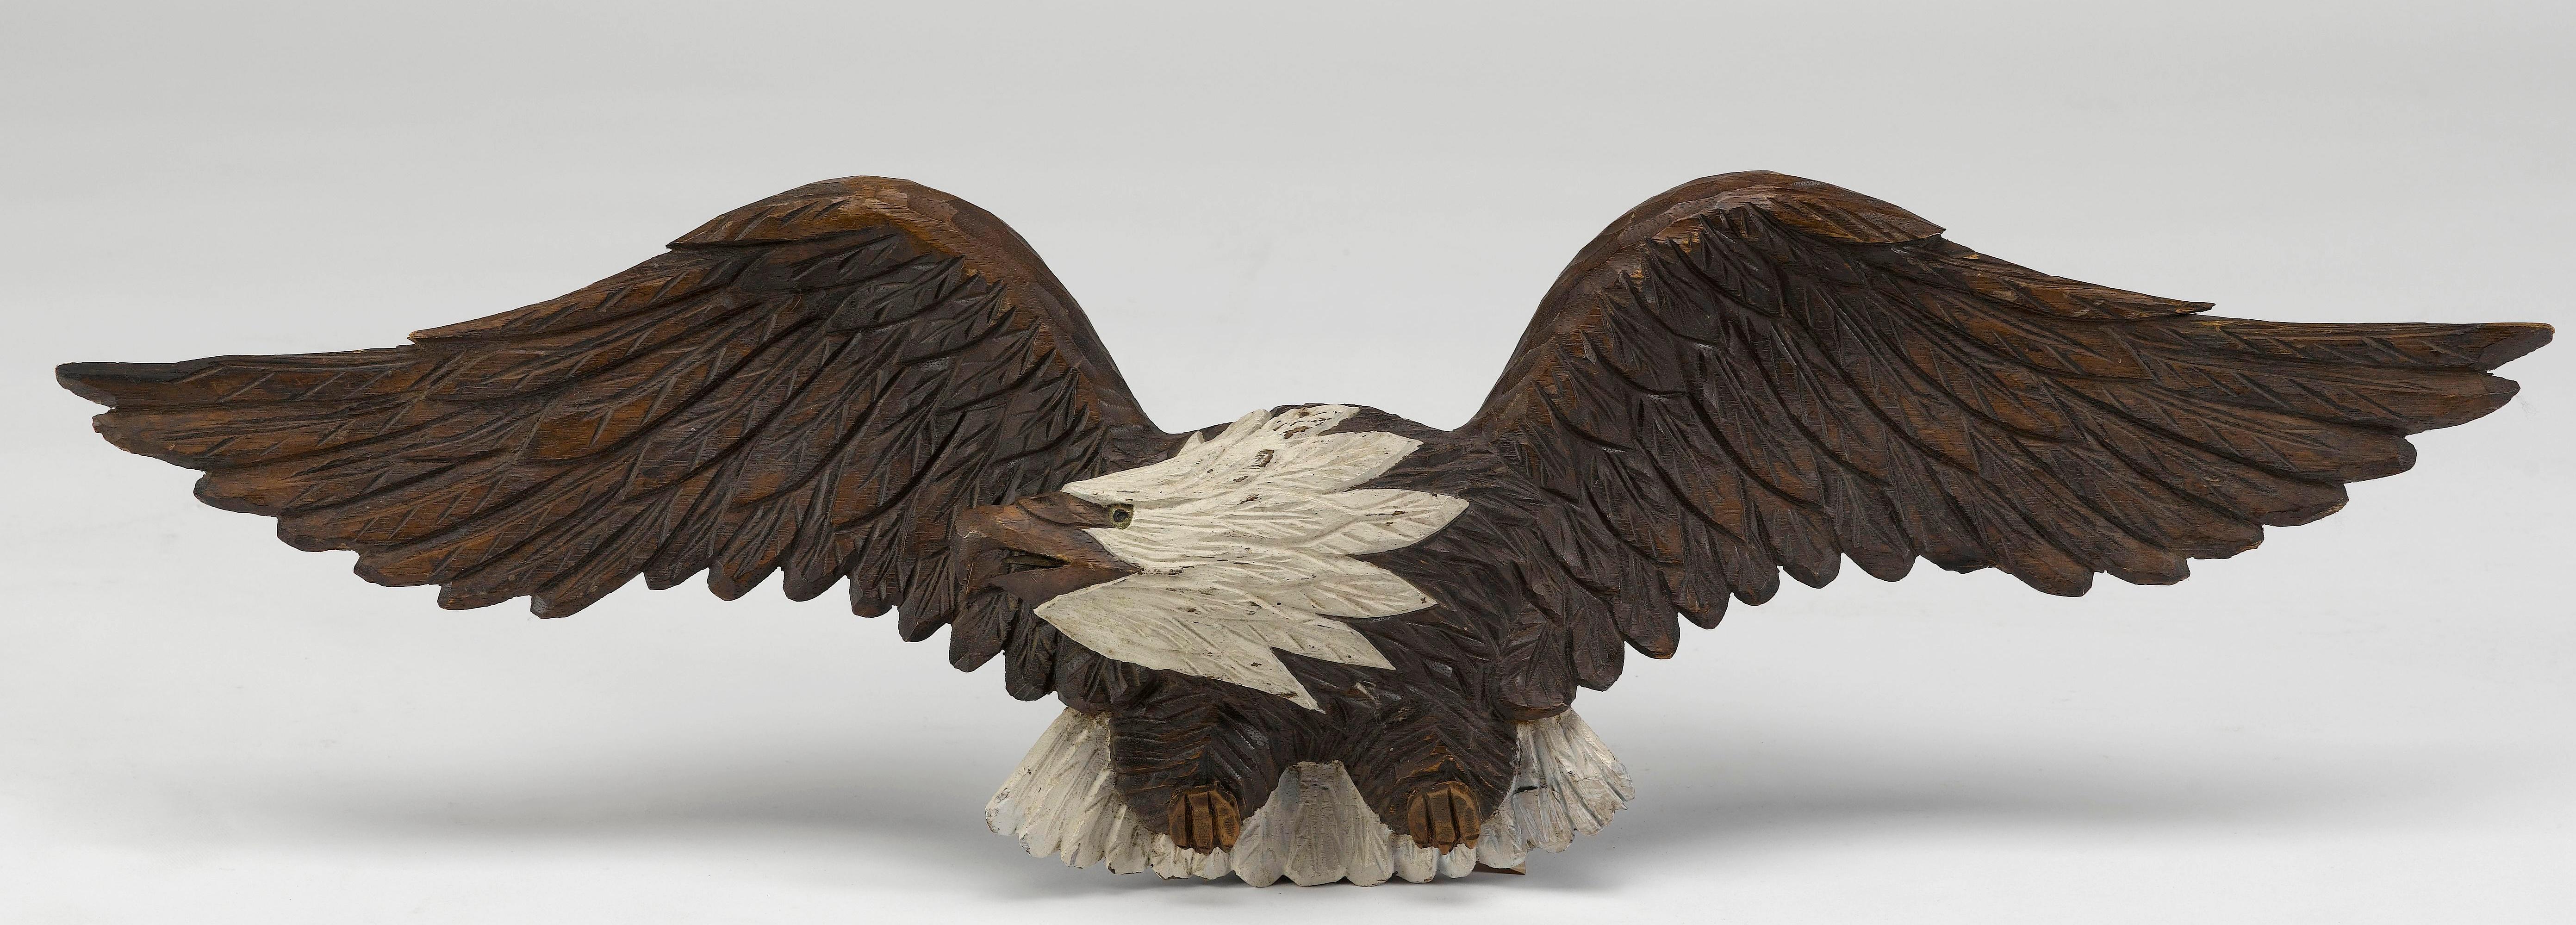 Il s'agit d'un superbe pygargue à tête blanche sculpté à la main, datant du début ou du milieu du XXe siècle. L'aigle est sculpté dans une grande pièce de bois, ce qui rend les détails complexes des plumes et du bec encore plus impressionnants.